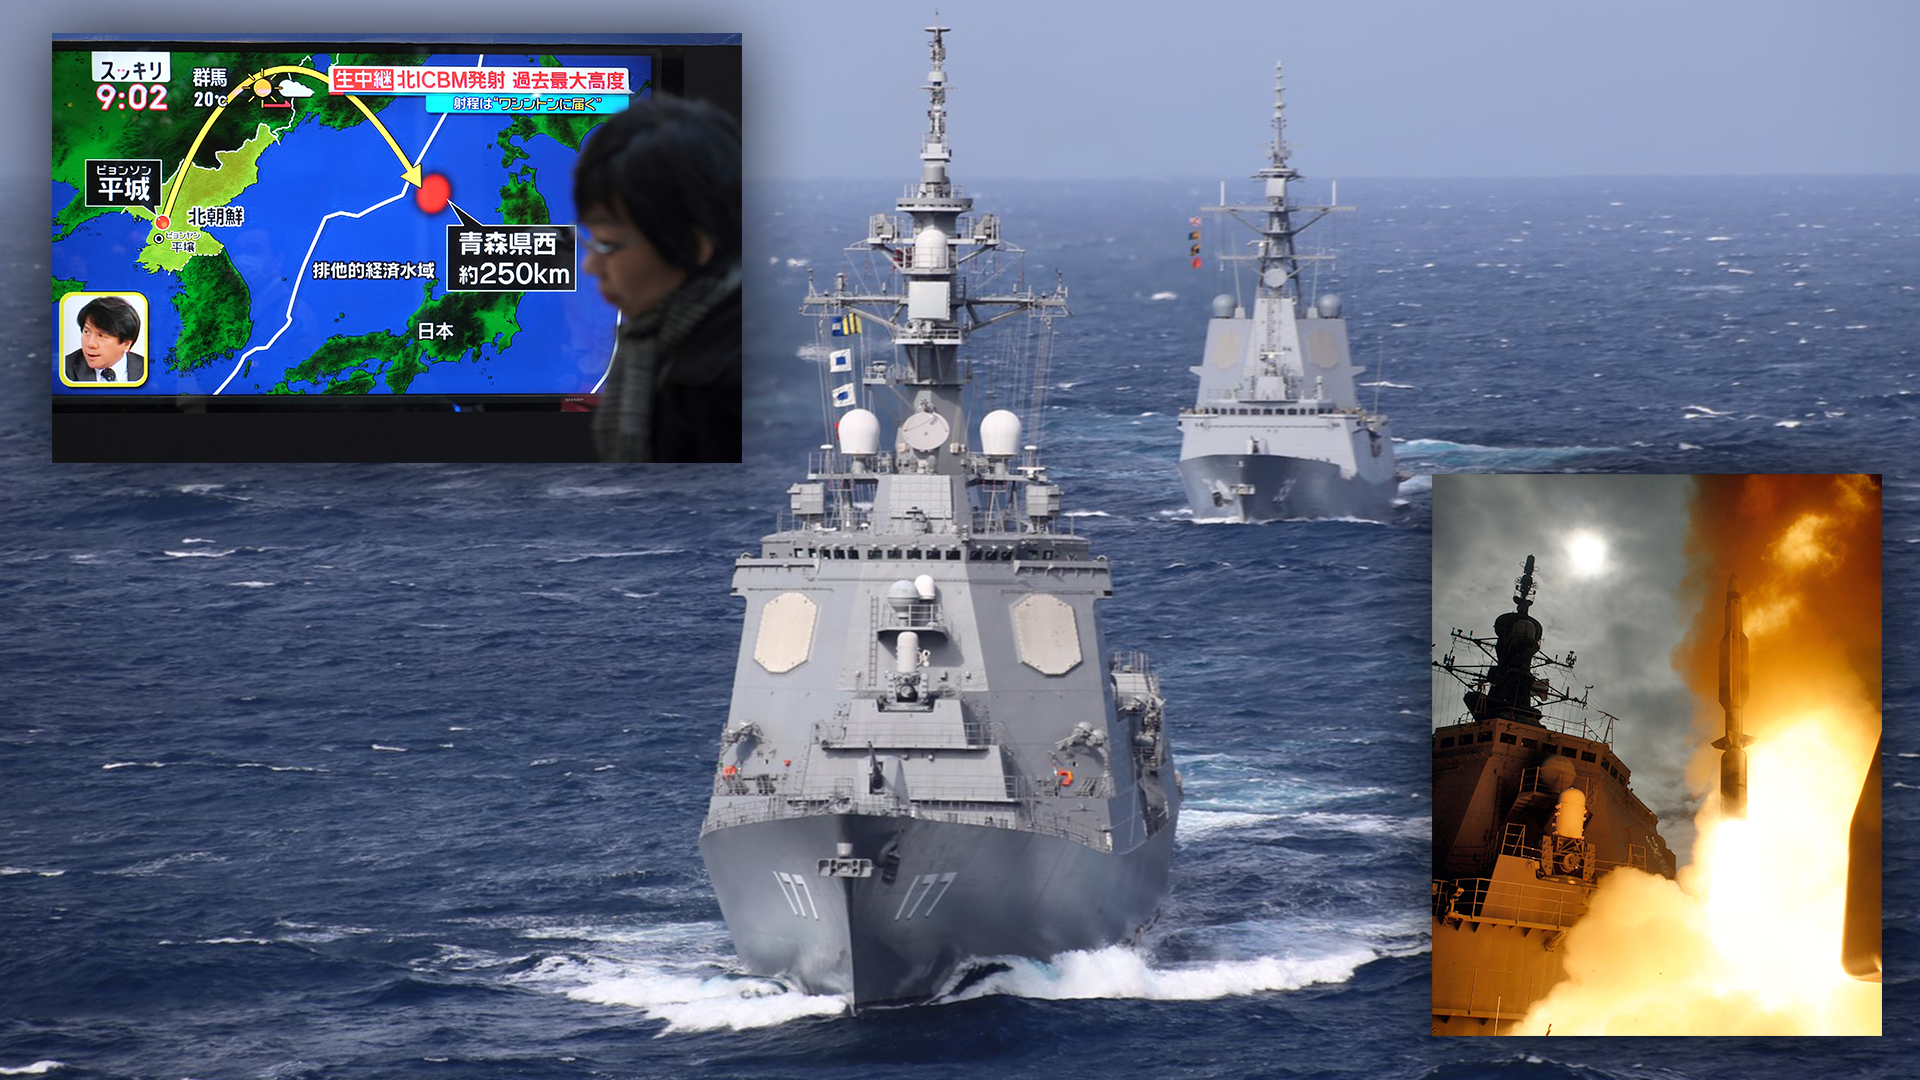 Japan Aegis Missile Defense